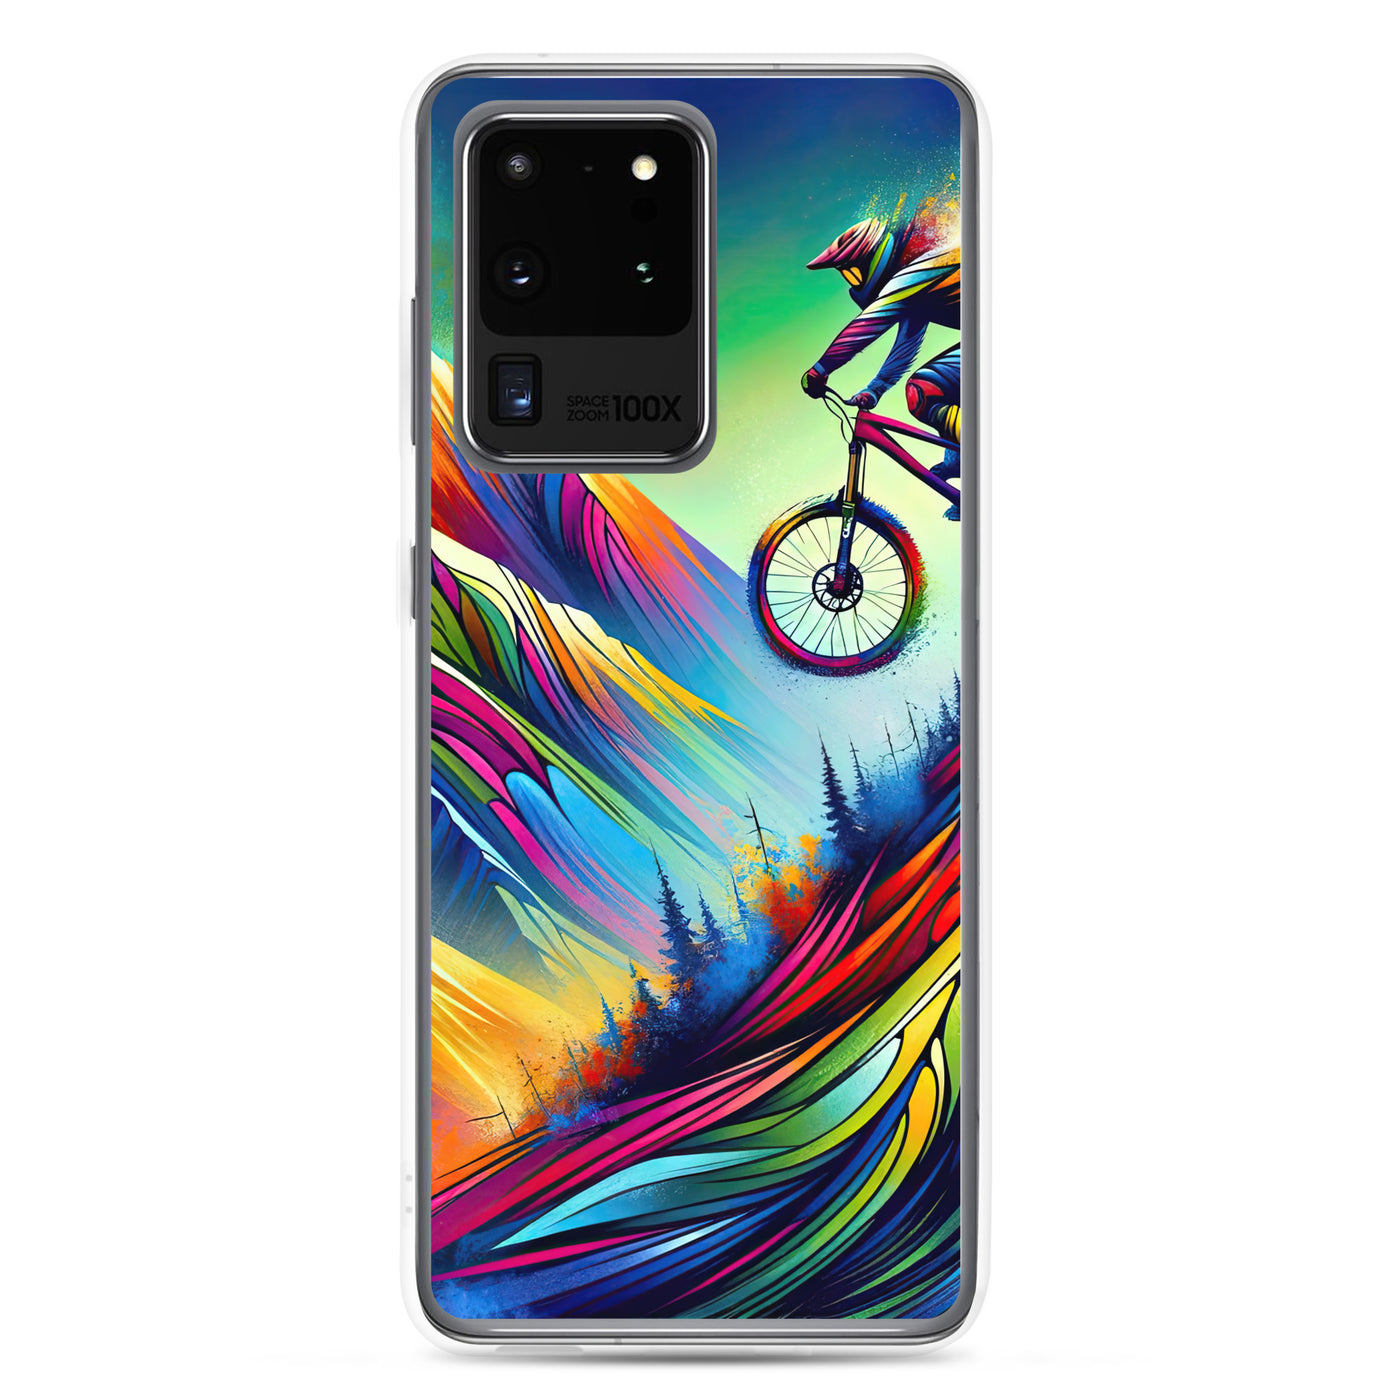 Mountainbiker in farbenfroher Alpenkulisse mit abstraktem Touch (M) - Samsung Schutzhülle (durchsichtig) xxx yyy zzz Samsung Galaxy S20 Ultra